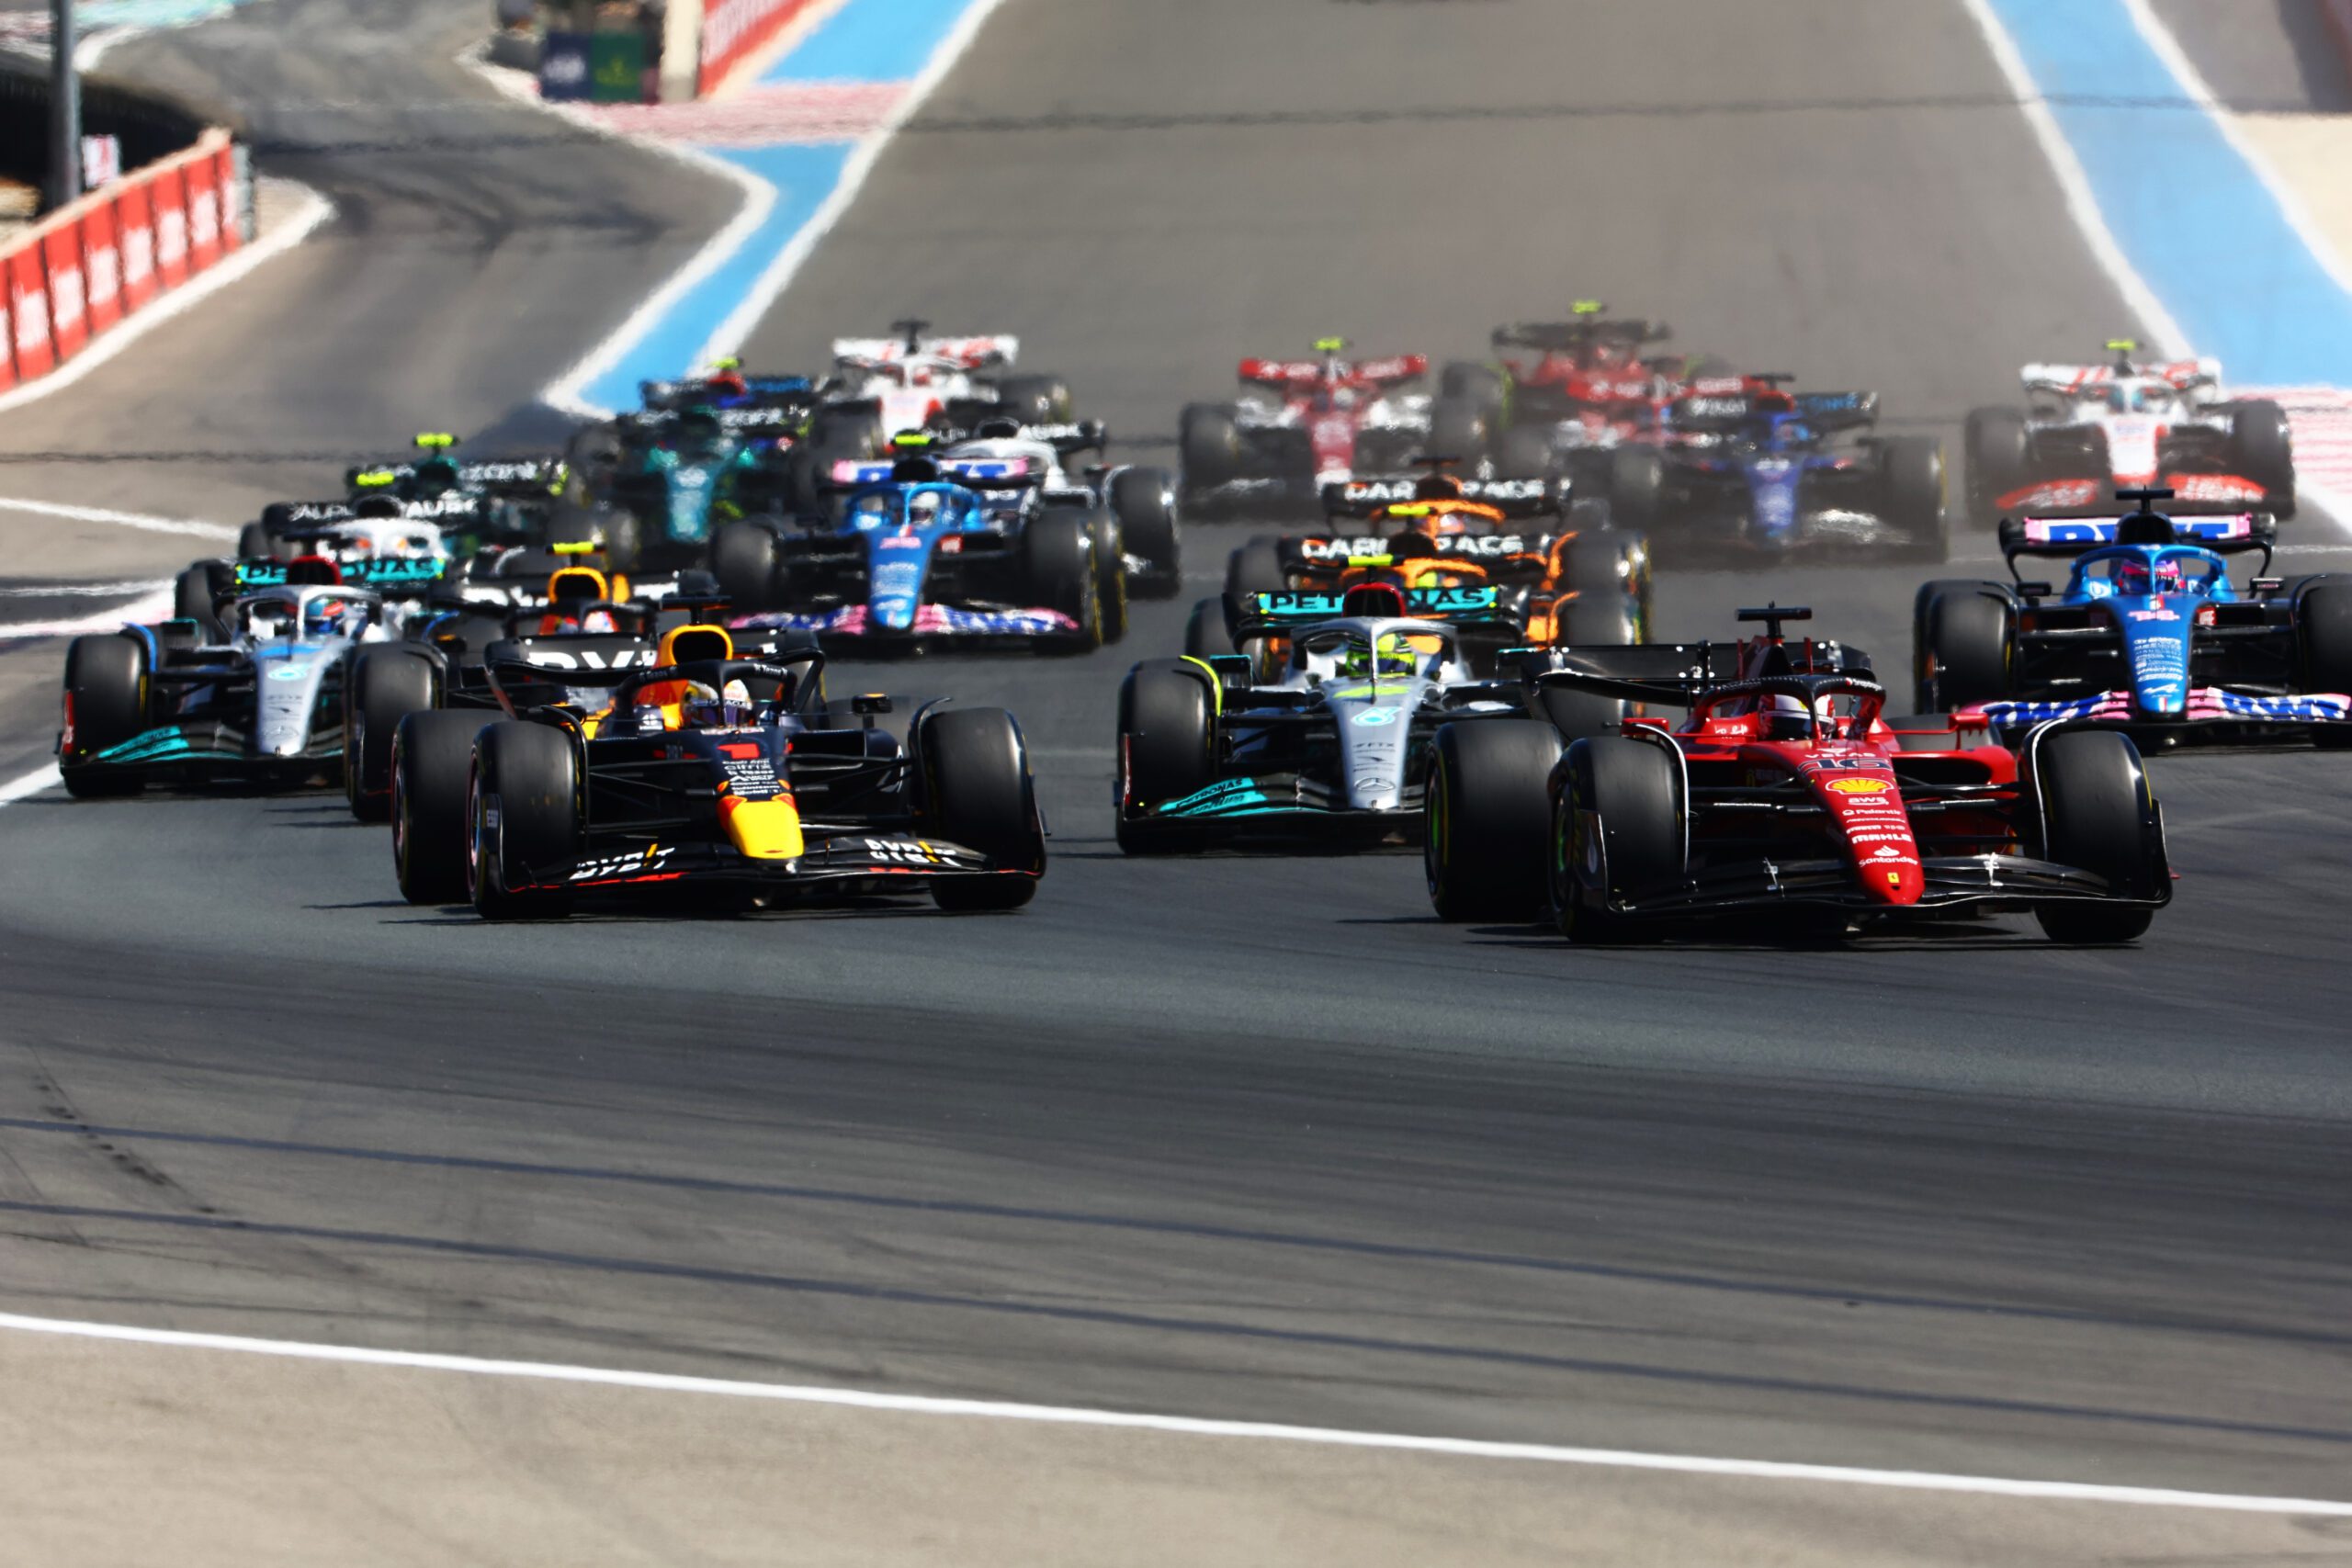 F1 - Les équipes de F1 veulent une décision rapide concernant les changements pour 2023